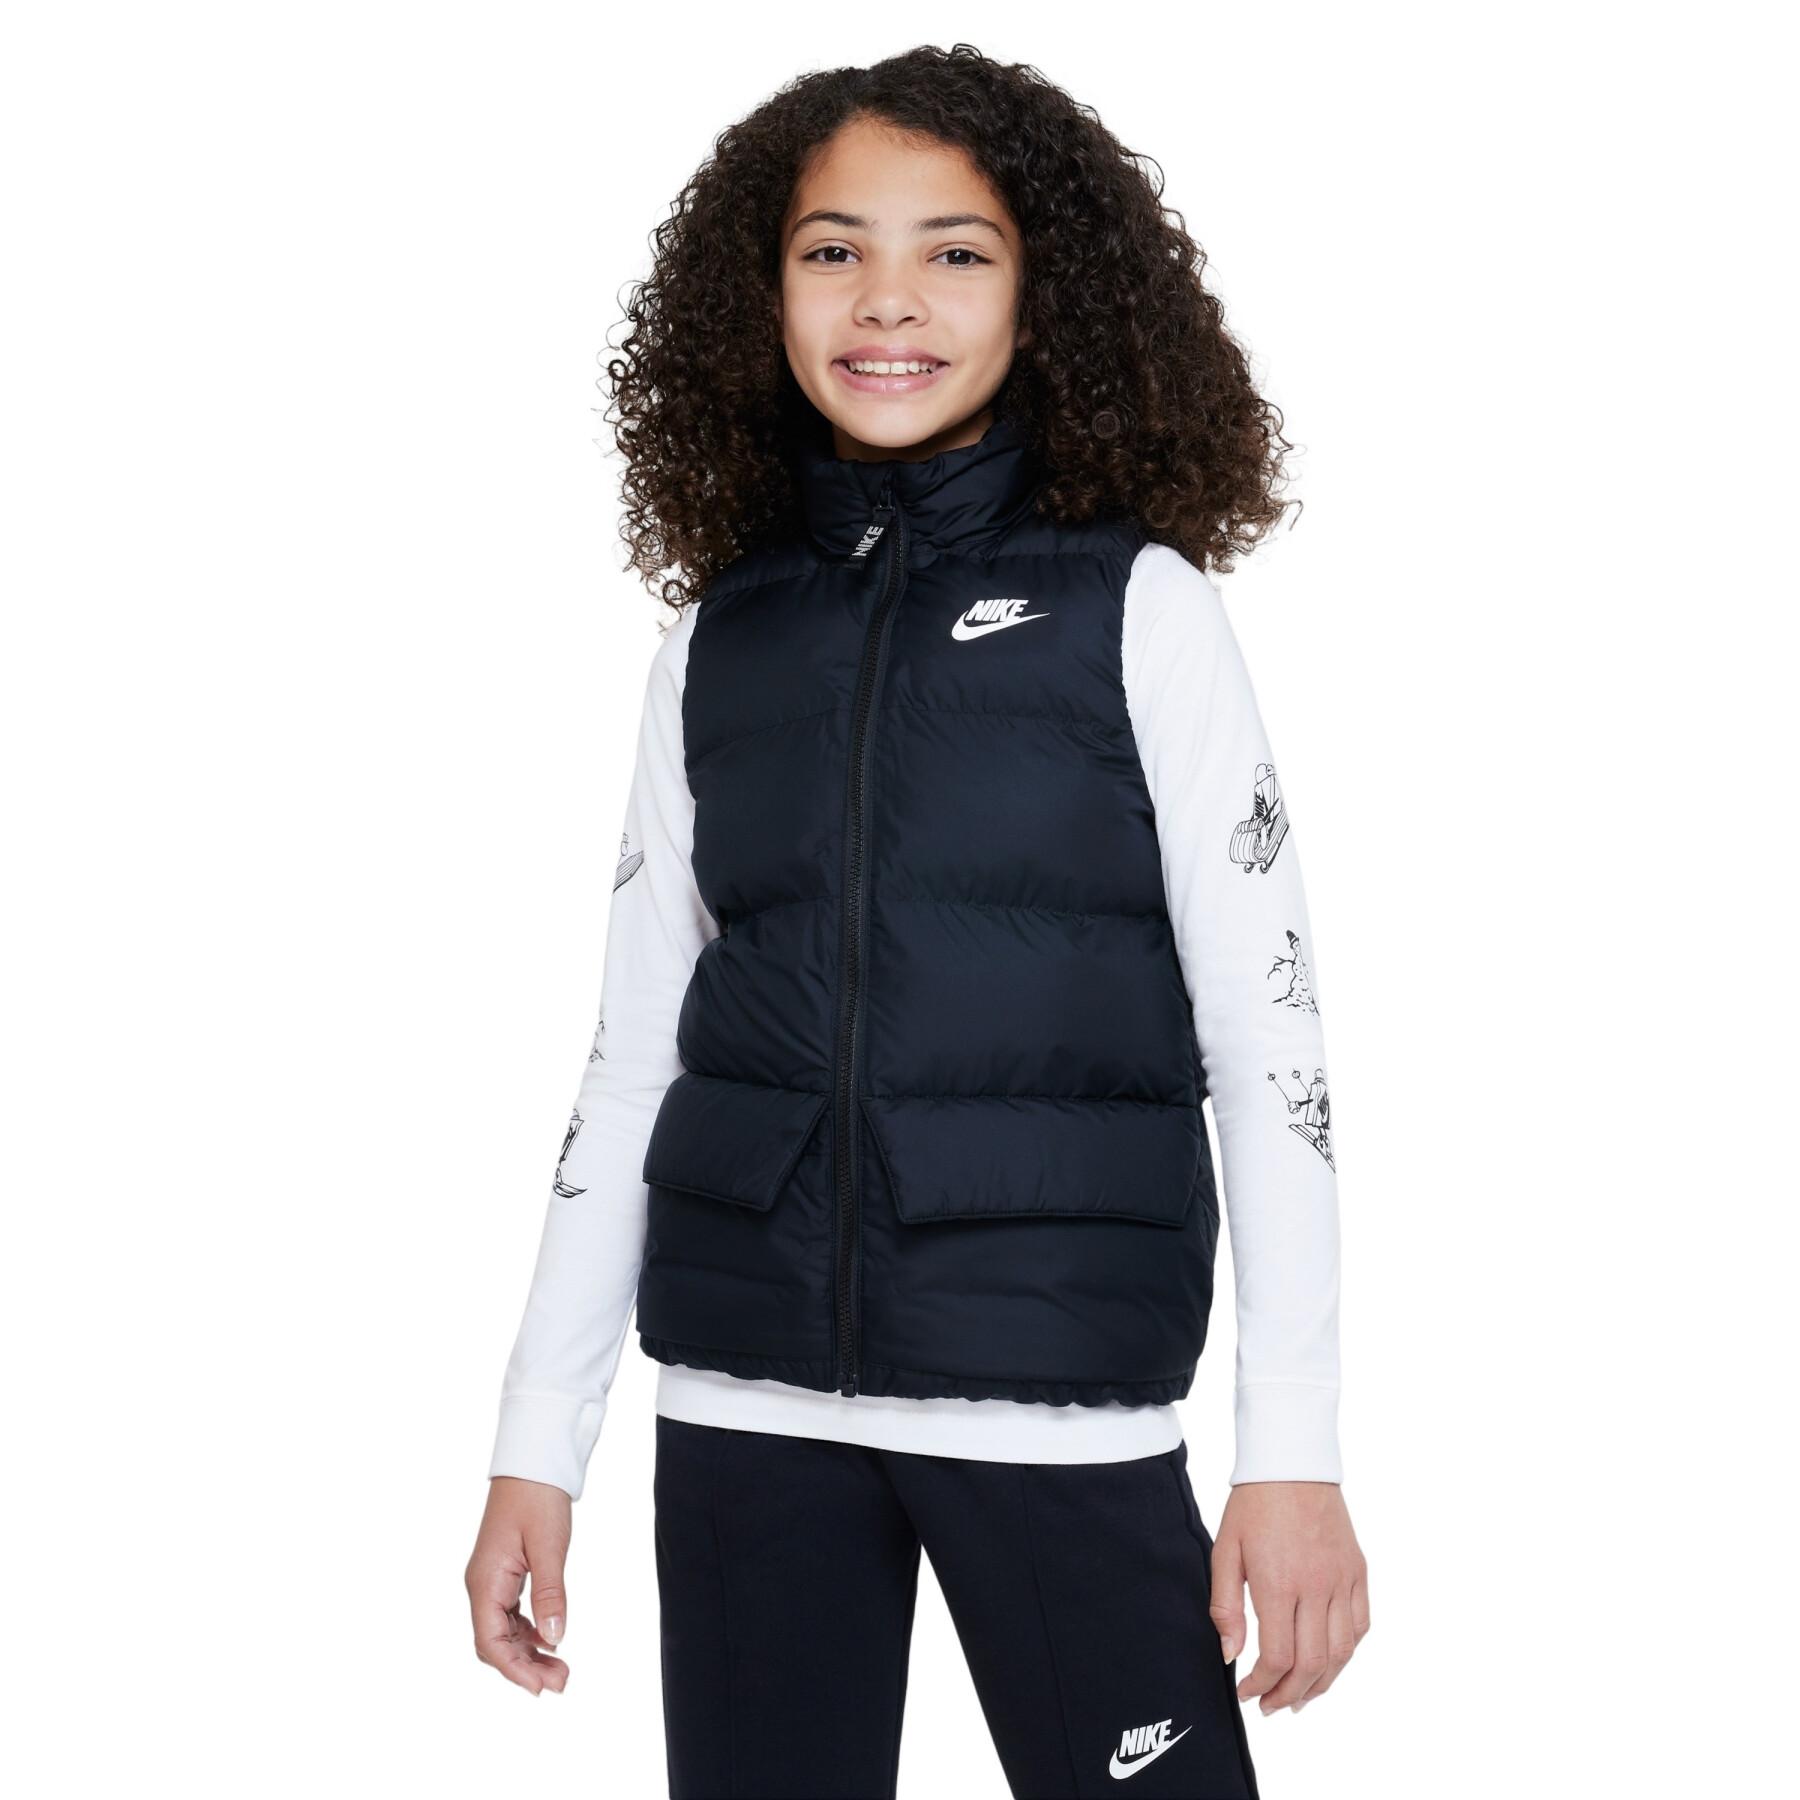 Doudoune enfant Nike Sportswear - Textile - Running - Entretien physique